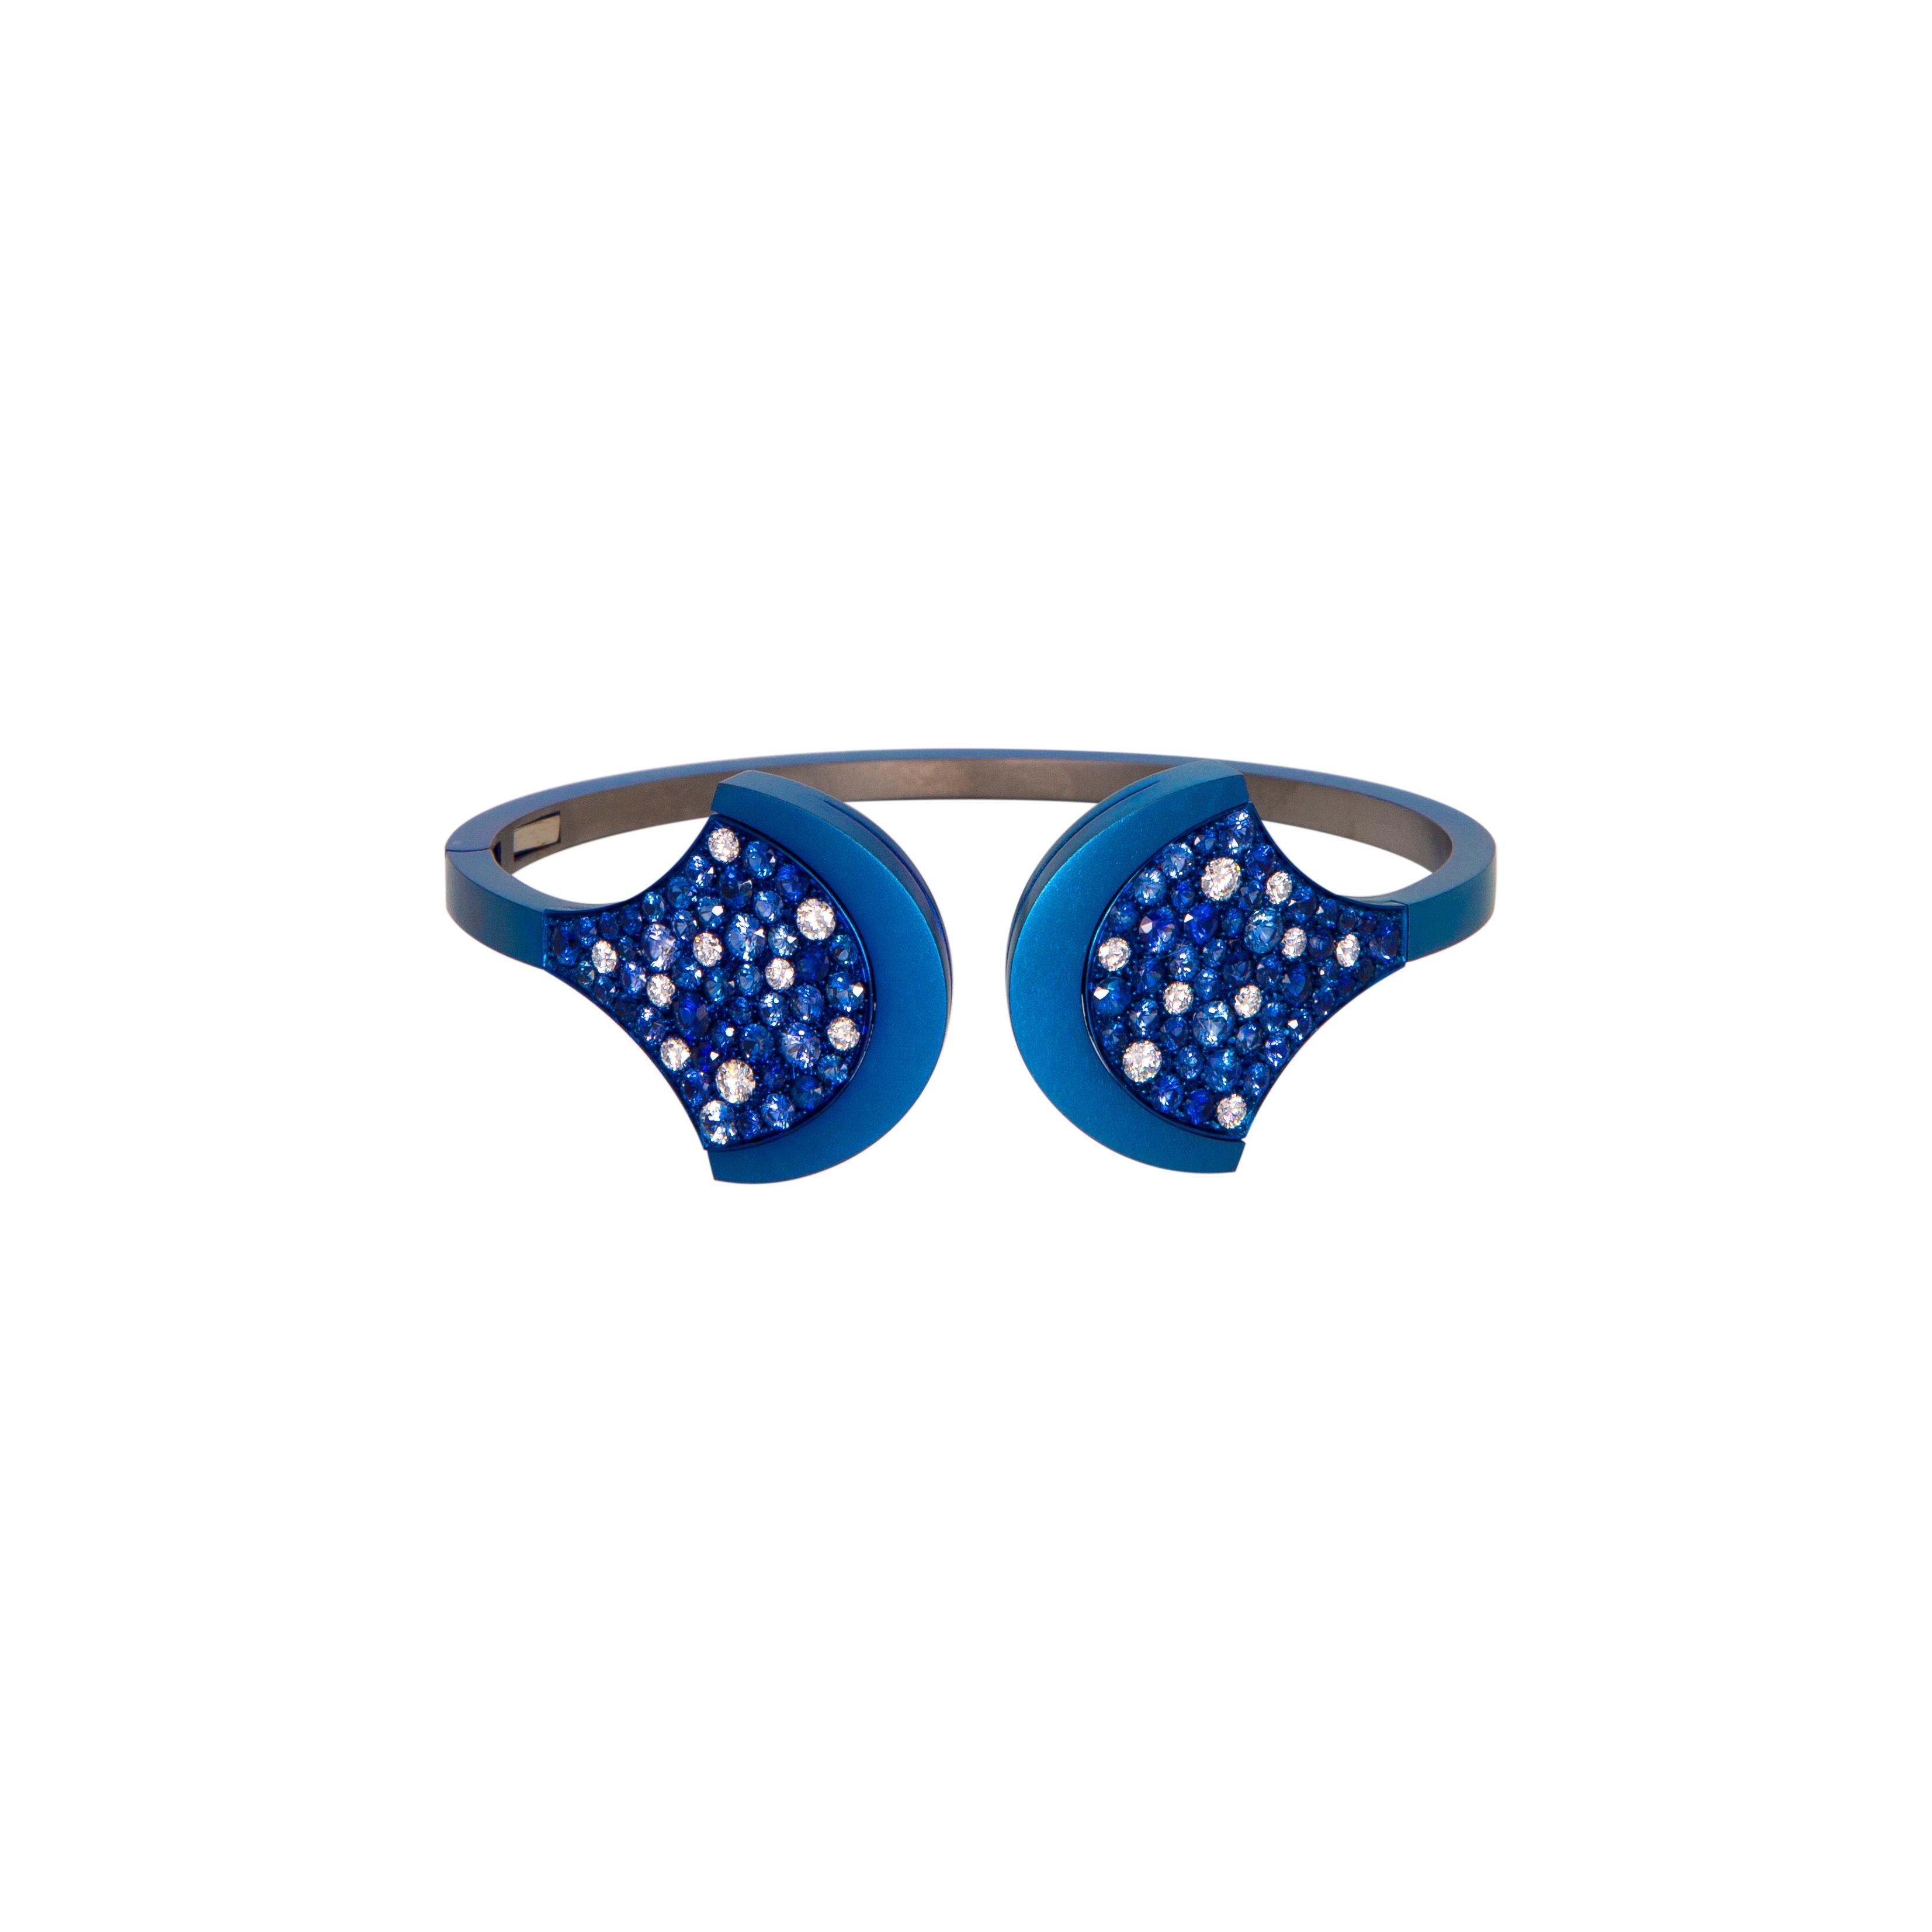 Bracelet Titatium bleu avec diamants et saphir bleu.
Un bijou de luxe pour votre propre collection.
Bracelet unique fabriqué en Titane Extra Light avec Diamants ct. 0.75 (n.18 pierres) et Saphir Bleu ct. 4.56 (n.86 pierres). Le titane pèse environ